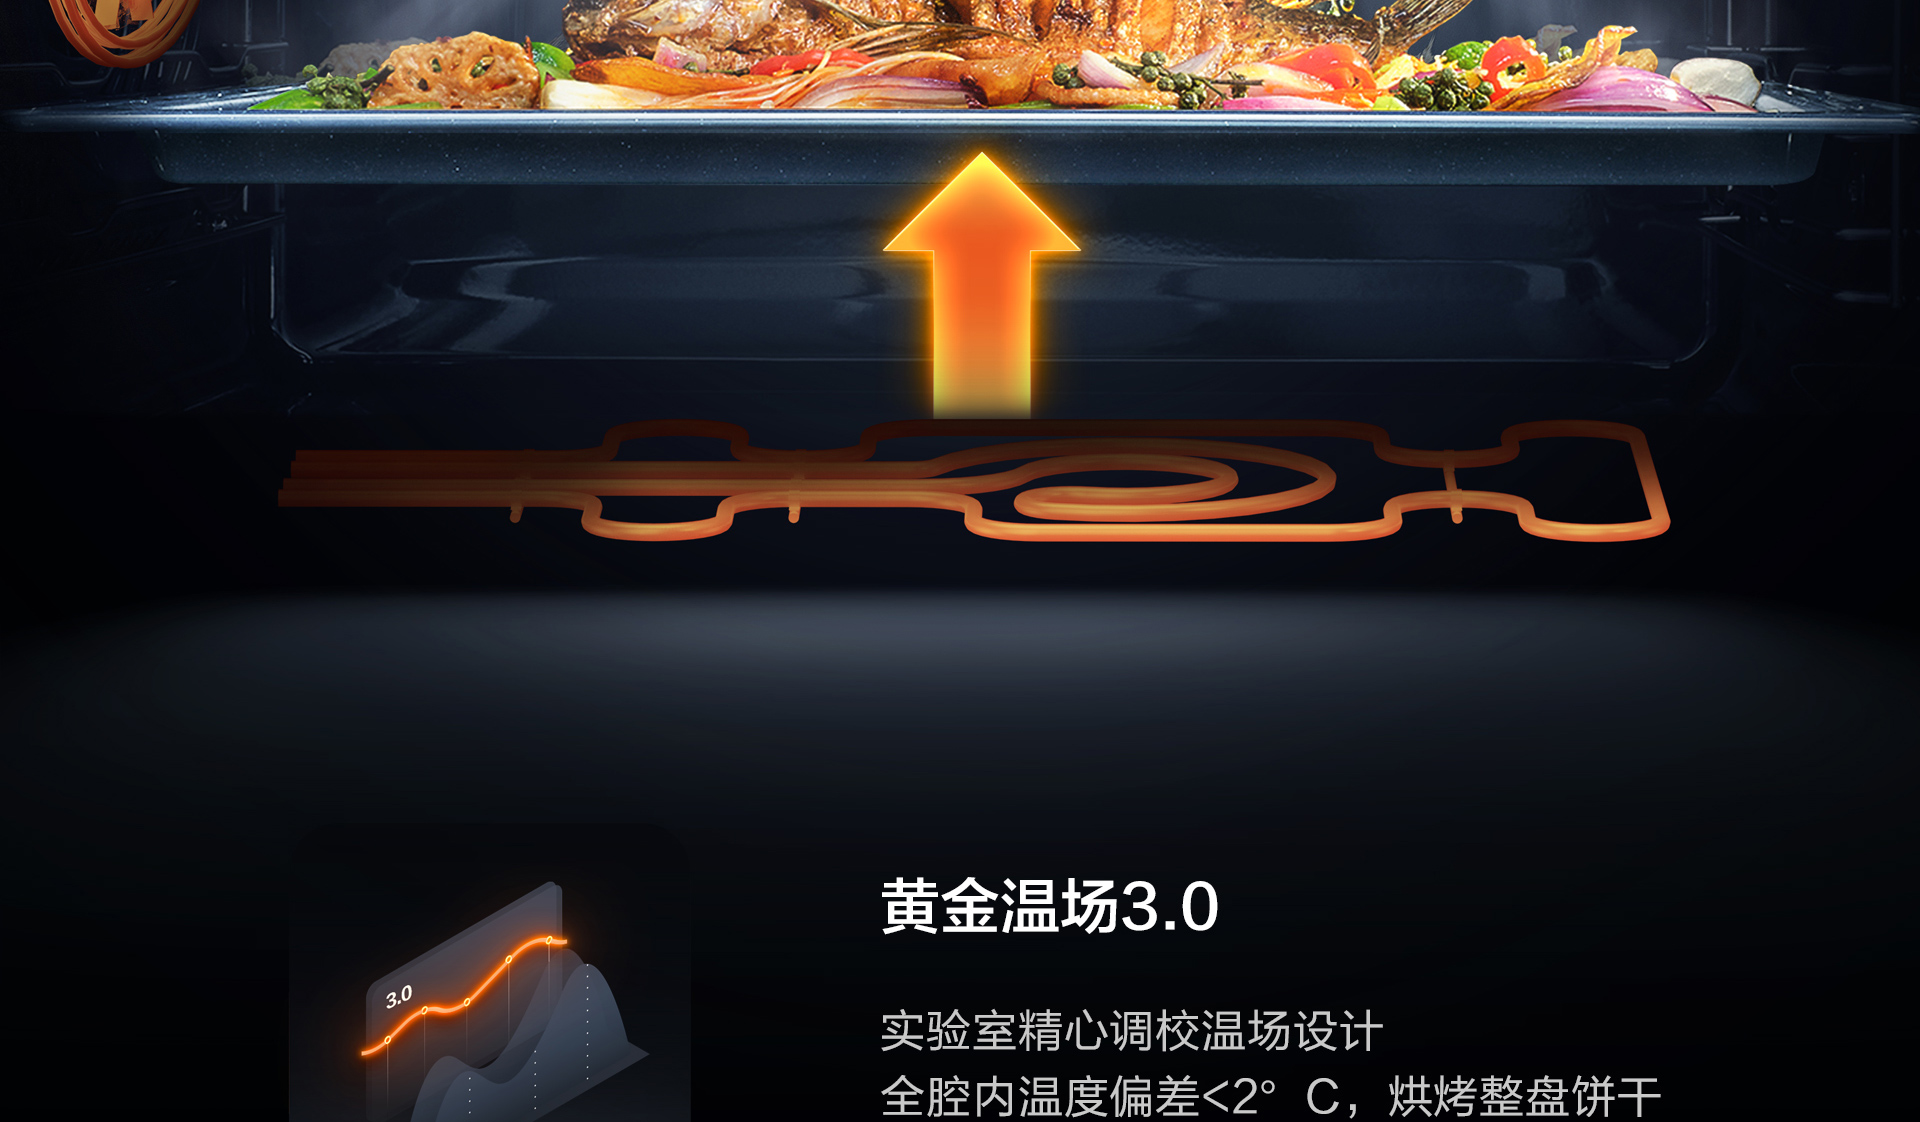 皇冠球网(中国)有限公司产品上新需求单-光焱洗消一体机S1-Plus_16.jpg